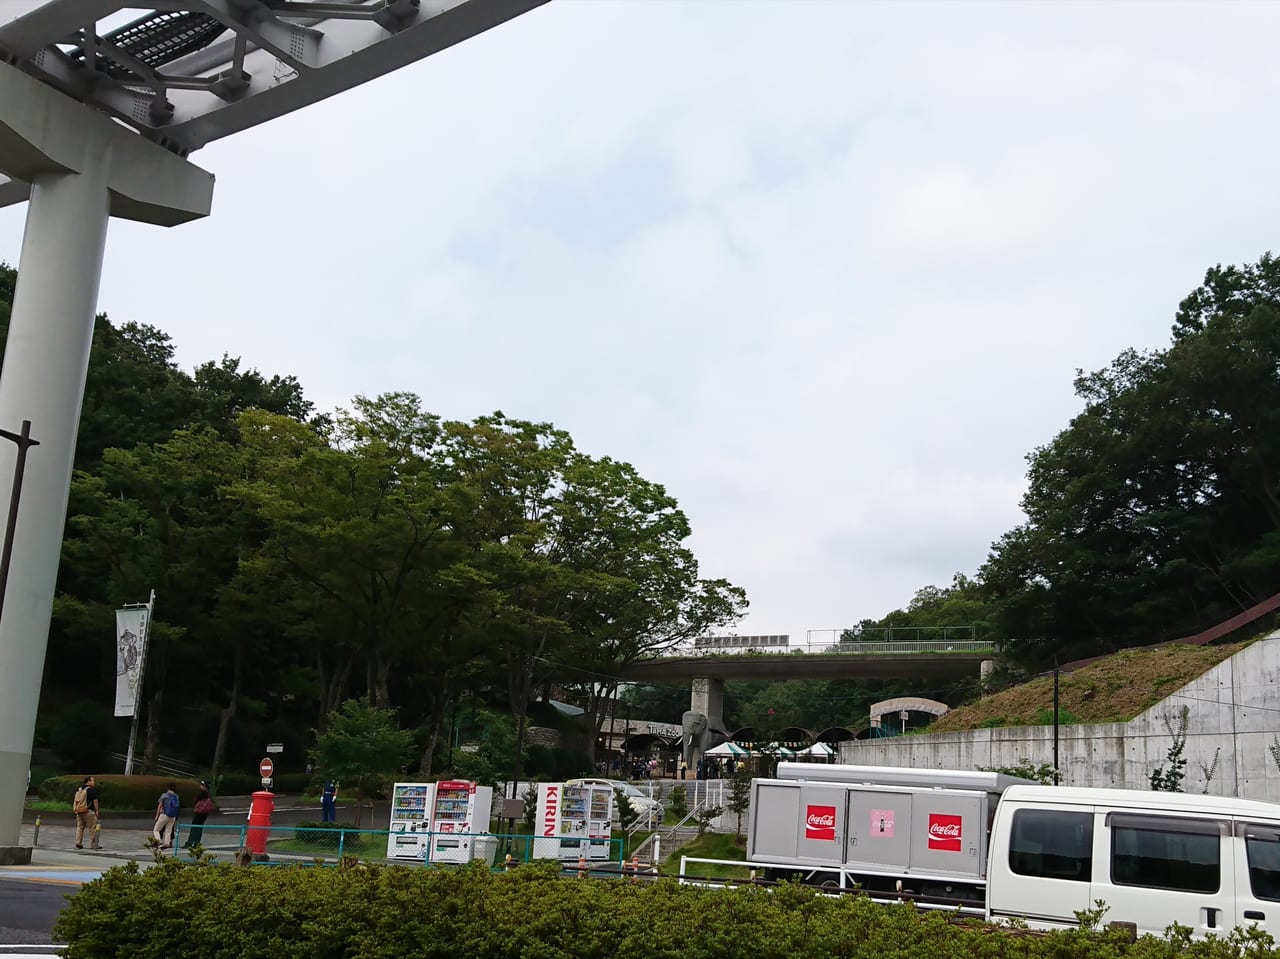 日野市 多摩動物園で8月25日サイ担当のベテラン飼育員さんが亡くなり